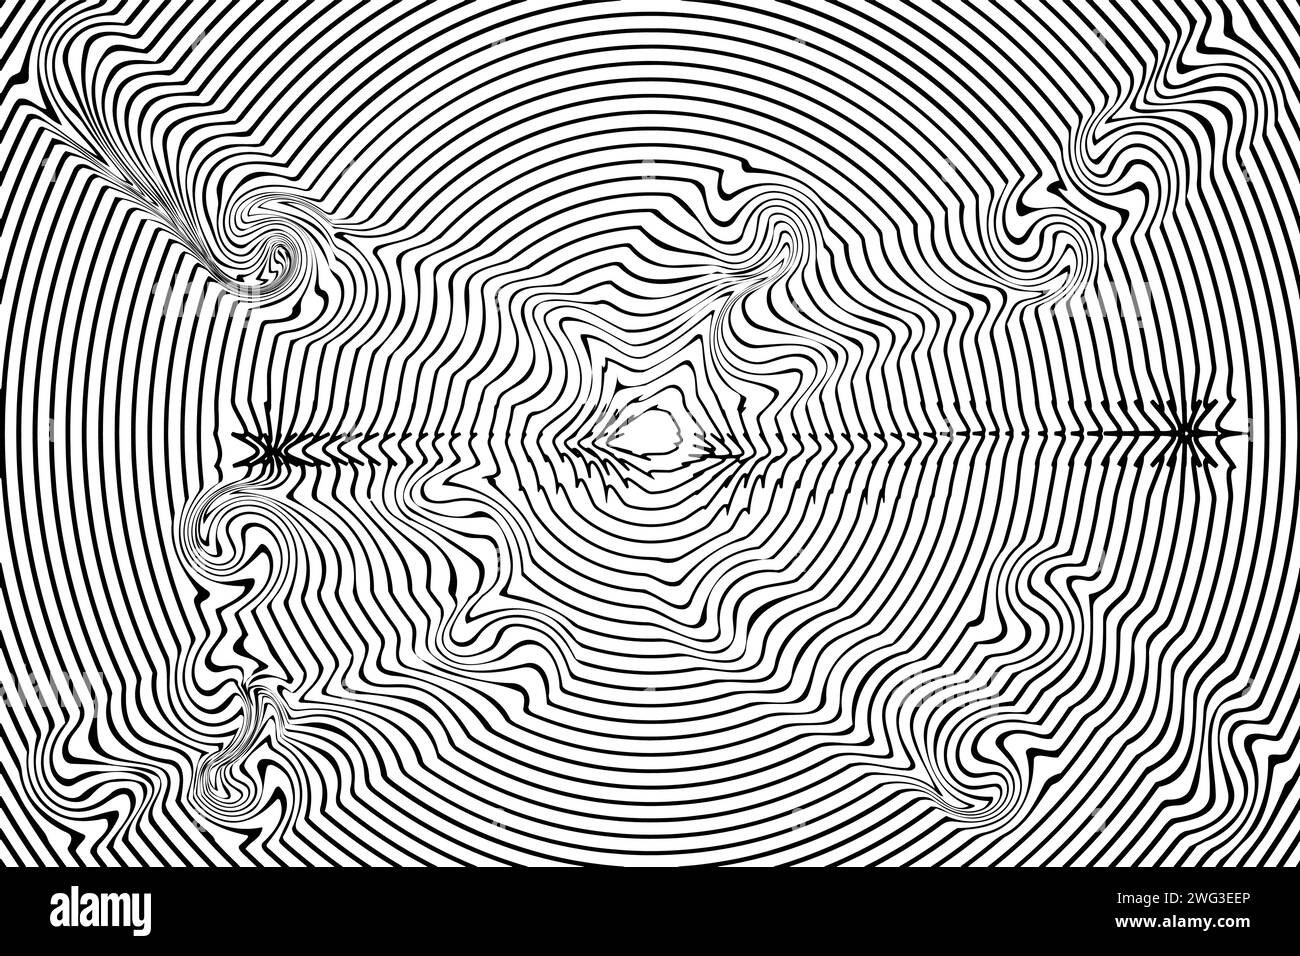 Illustration vectorielle de motif de lignes ondulées courbes abstraites. Illustration de Vecteur